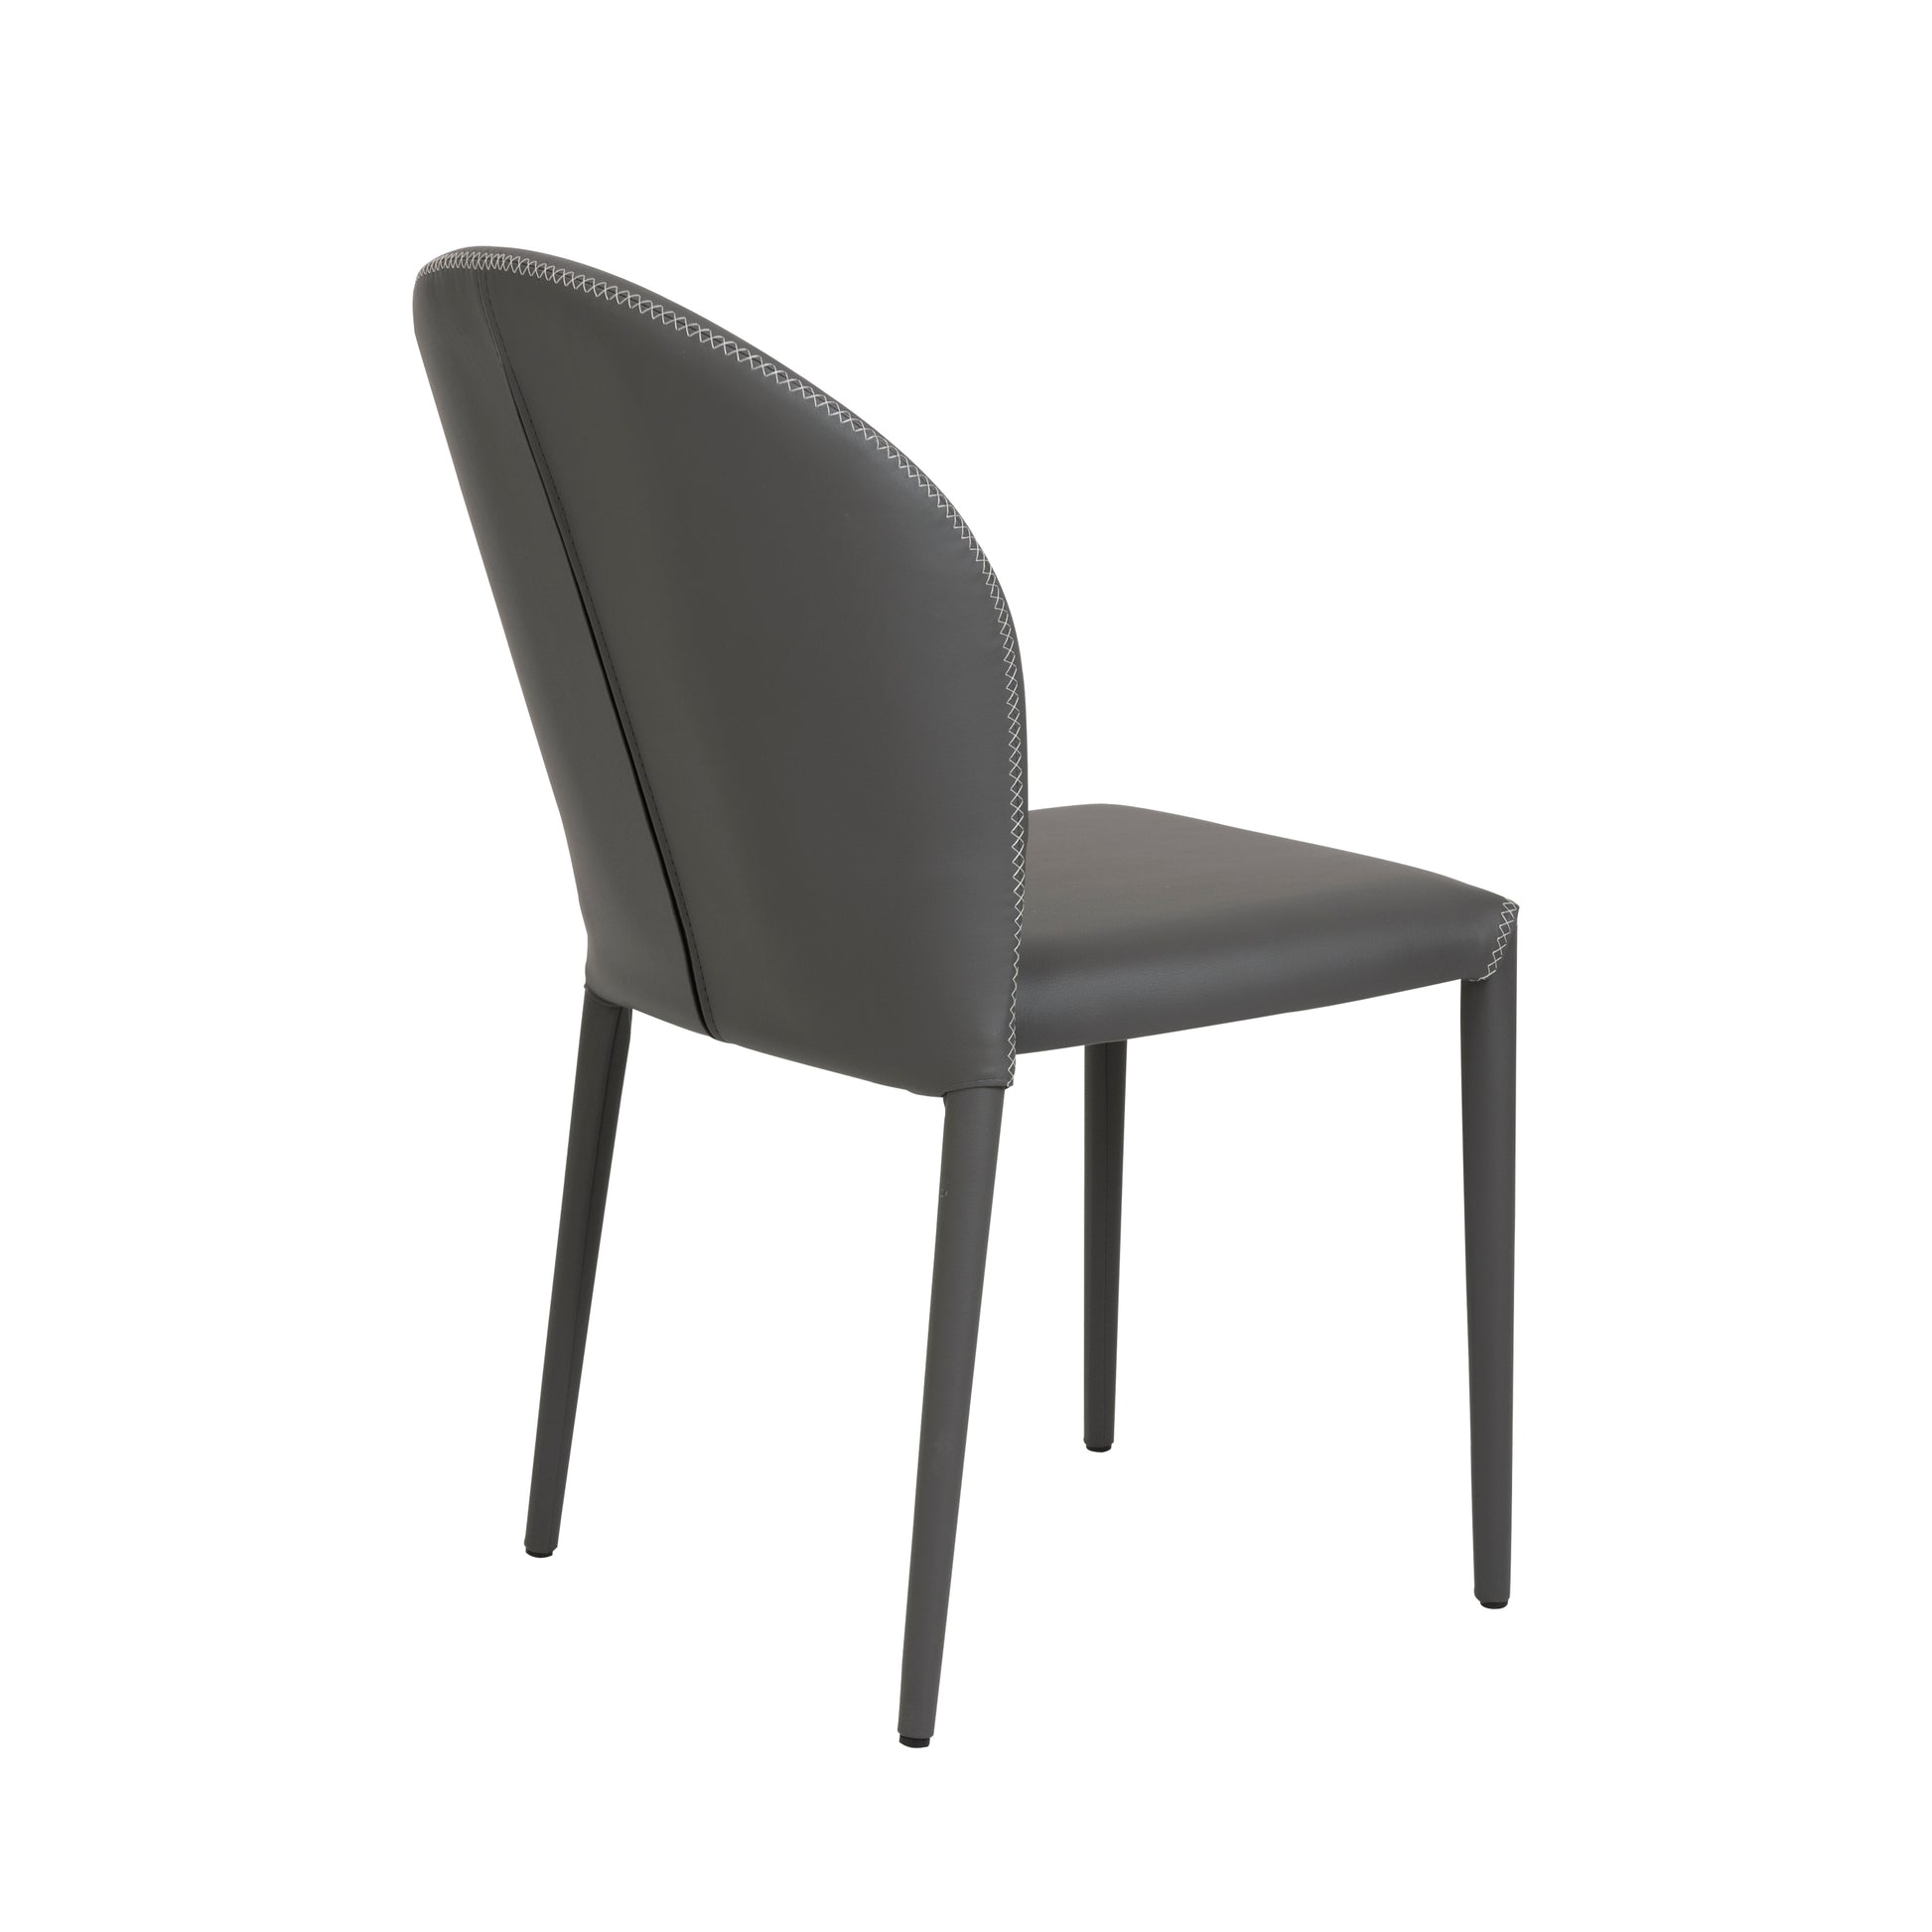 Elaine Side Chair - Eurohaus Modern Furniture LLC